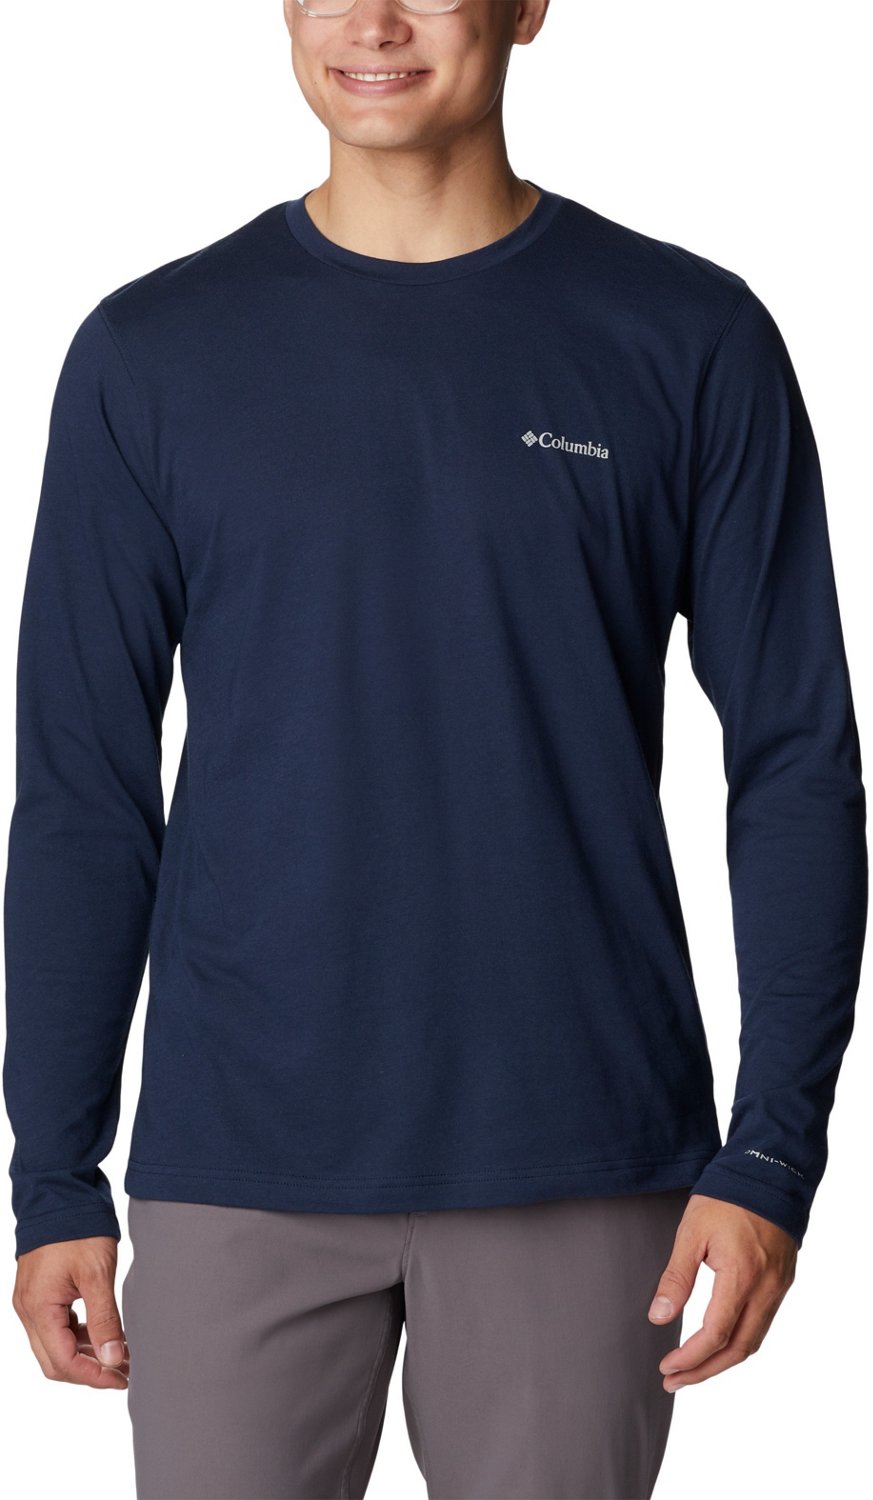 Men's Houston Astros Columbia Navy/Orange Colorblocked Tamiami Omni-Shade  Button-Up Shirt